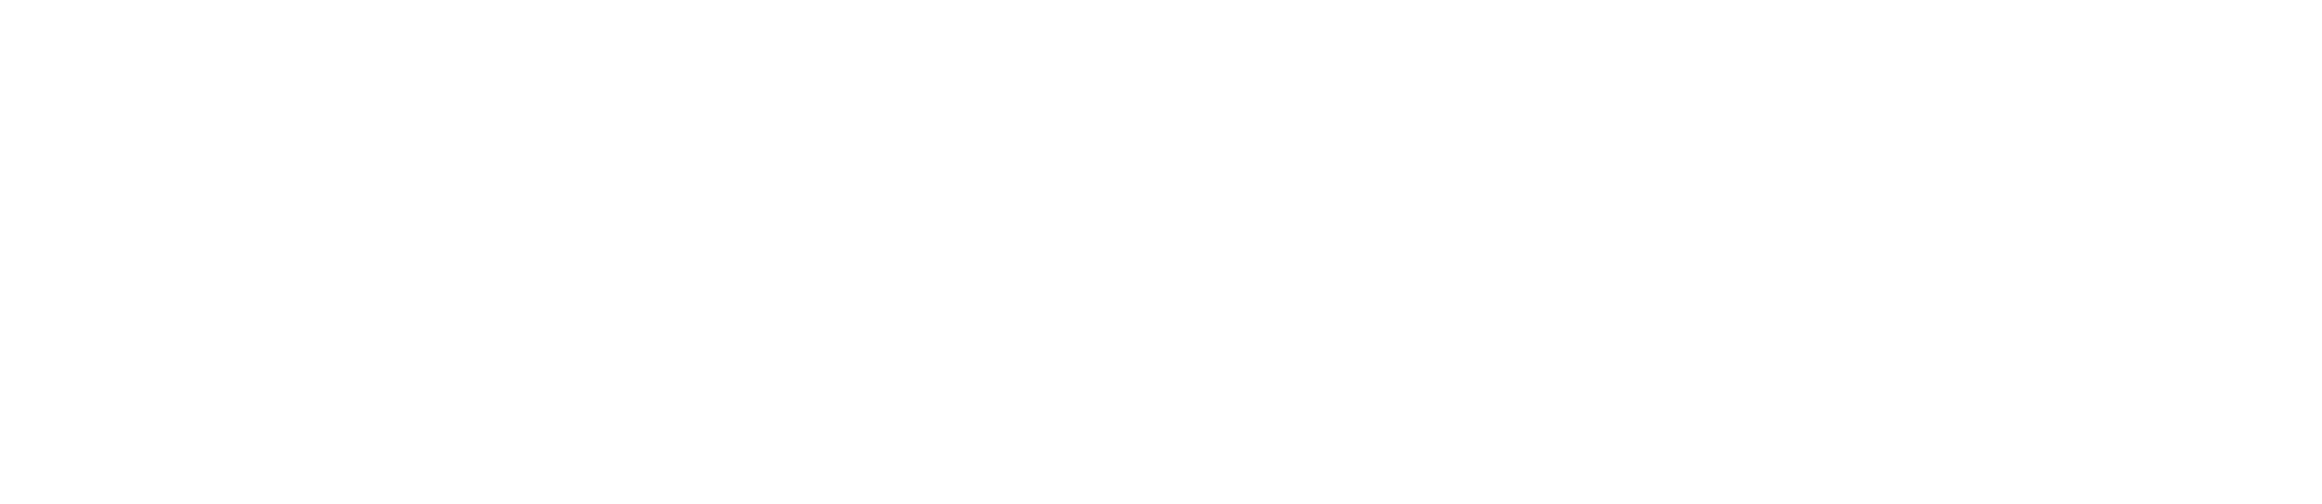 ANSI ISEA 138-1-白色3个.png